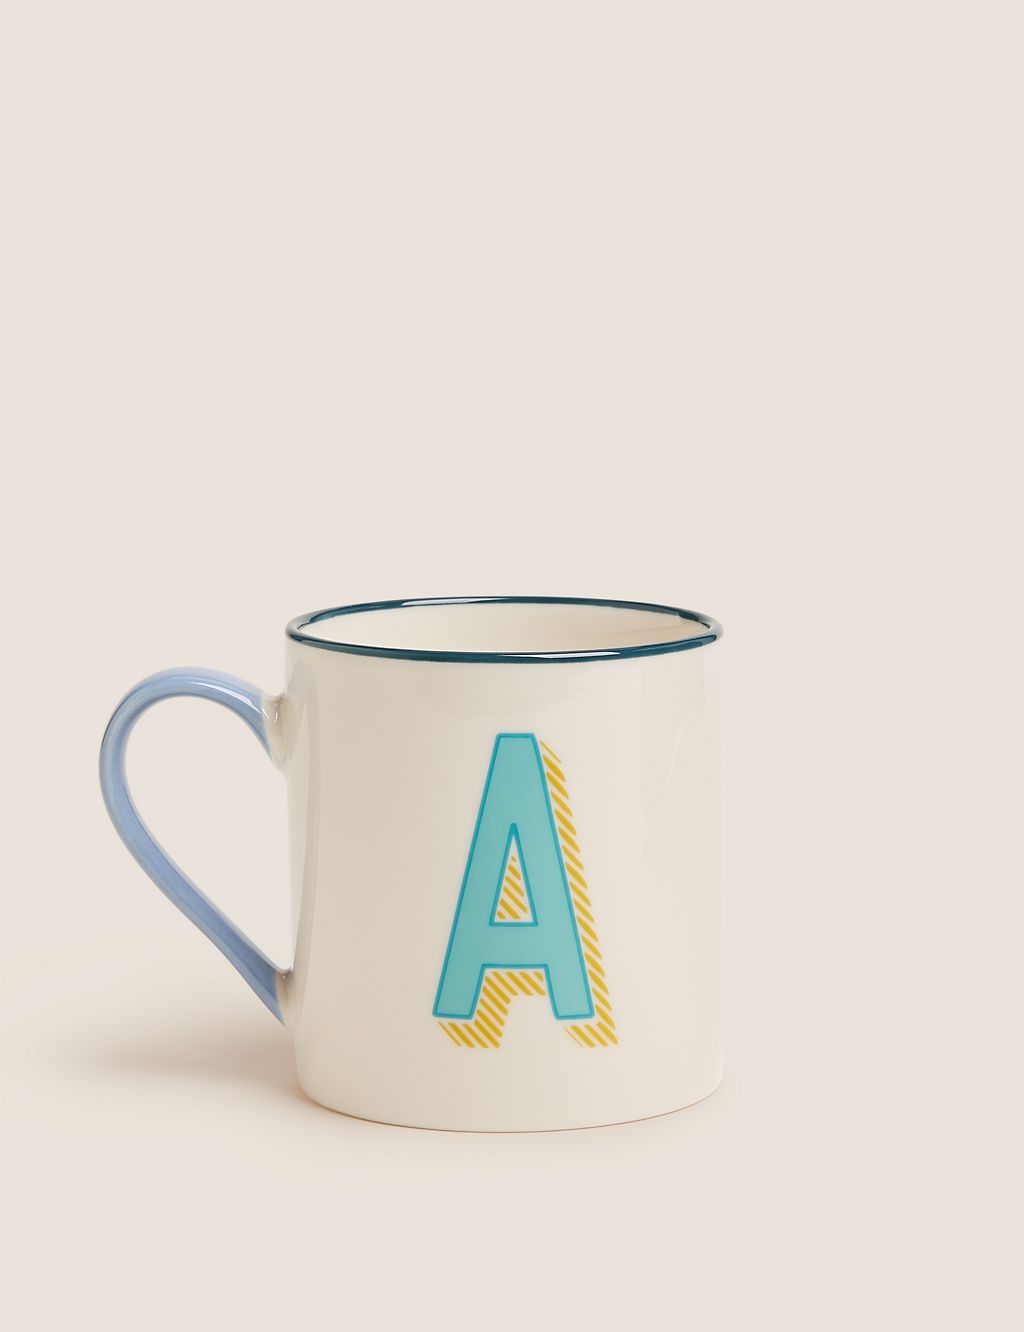 Alphabet Mug 2 of 5